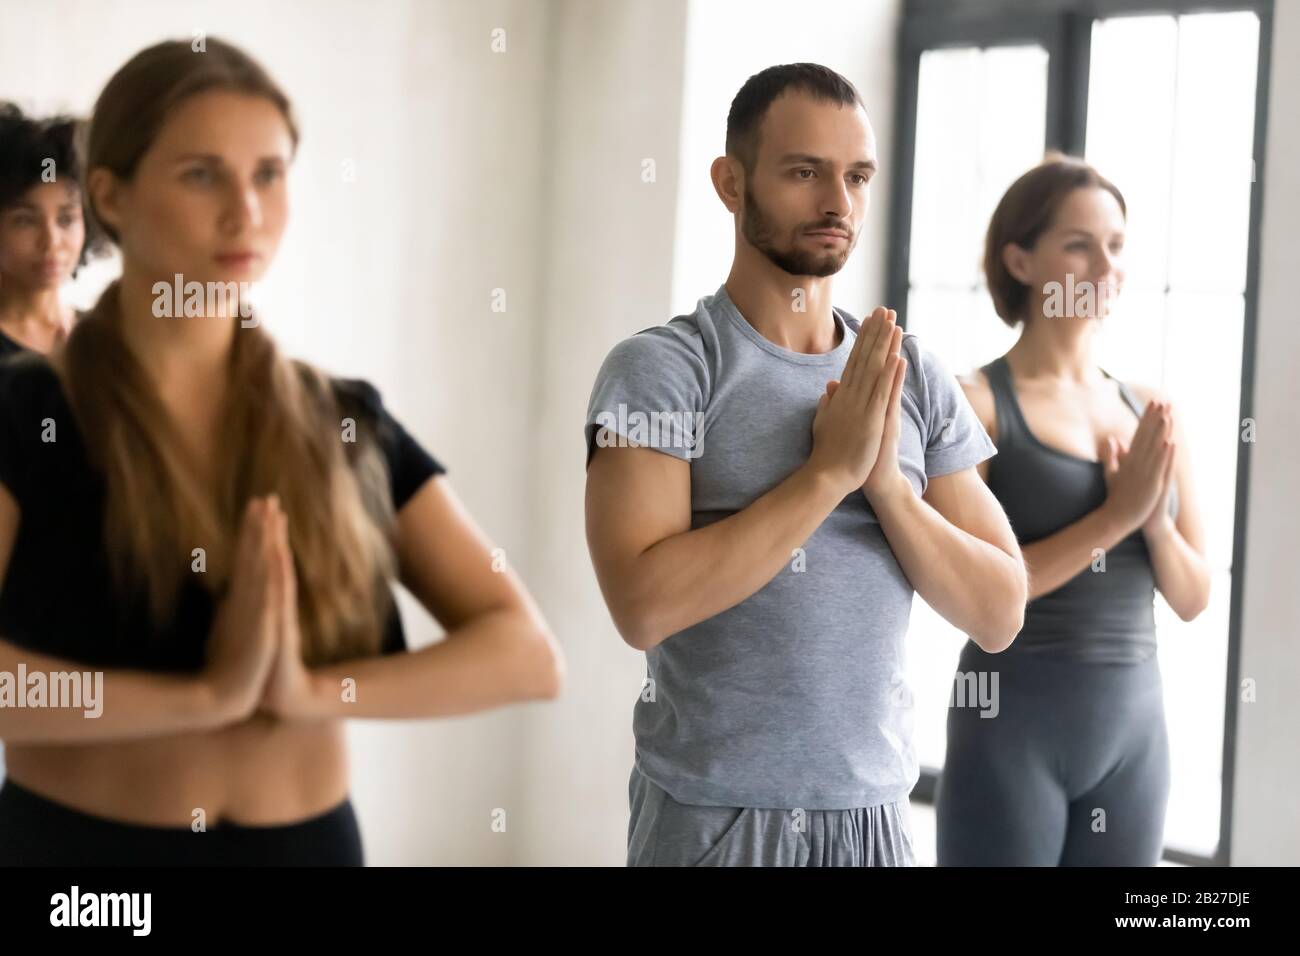 Les gens se tenant à l'intérieur avec des mains repliées montrant le geste Namaste Banque D'Images